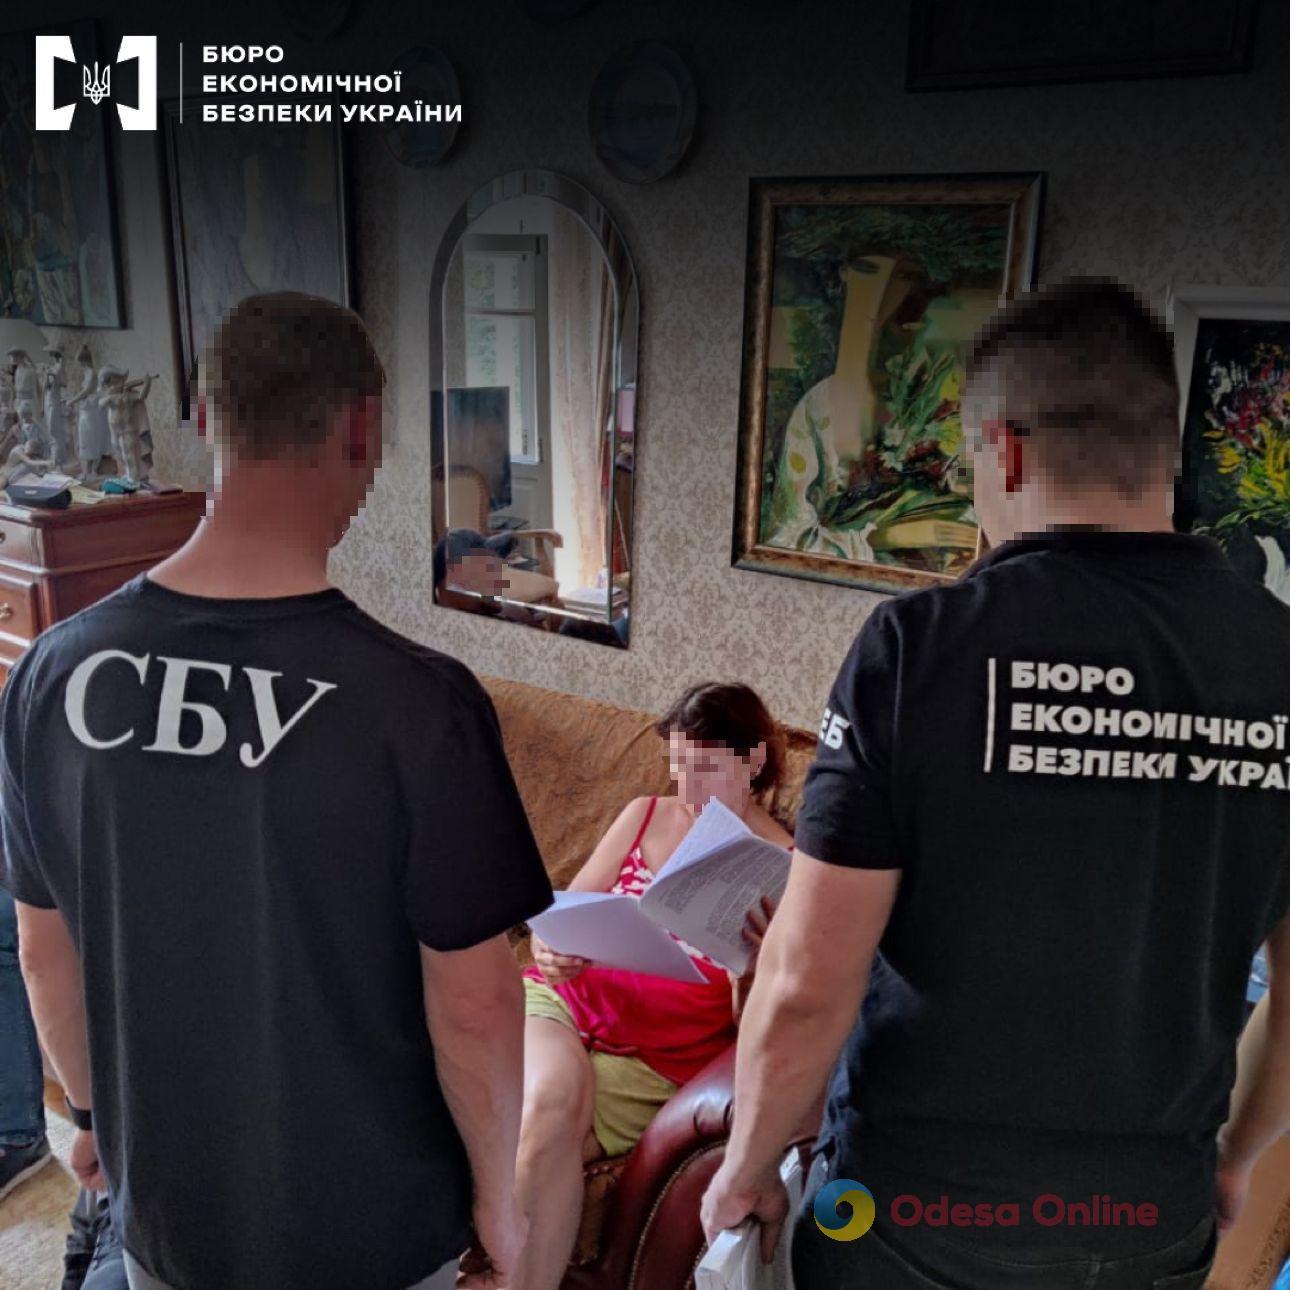 Неуплата налогов: правоохранители сообщили о подозрении главе одного из одесских банков